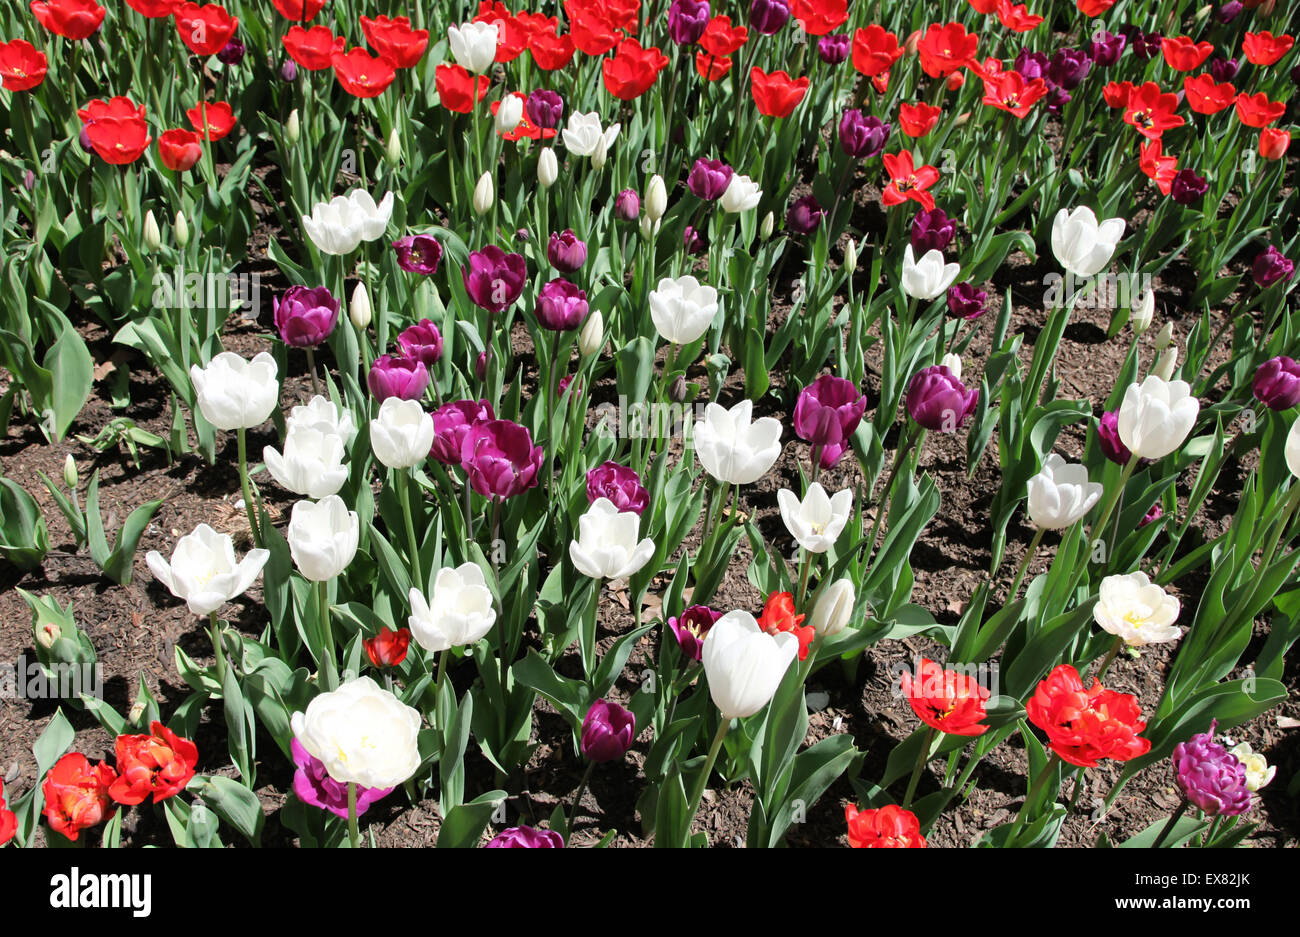 C'est une photo de tulipes violet et blanc en couleur rouge dans un jardin ou parc. Banque D'Images